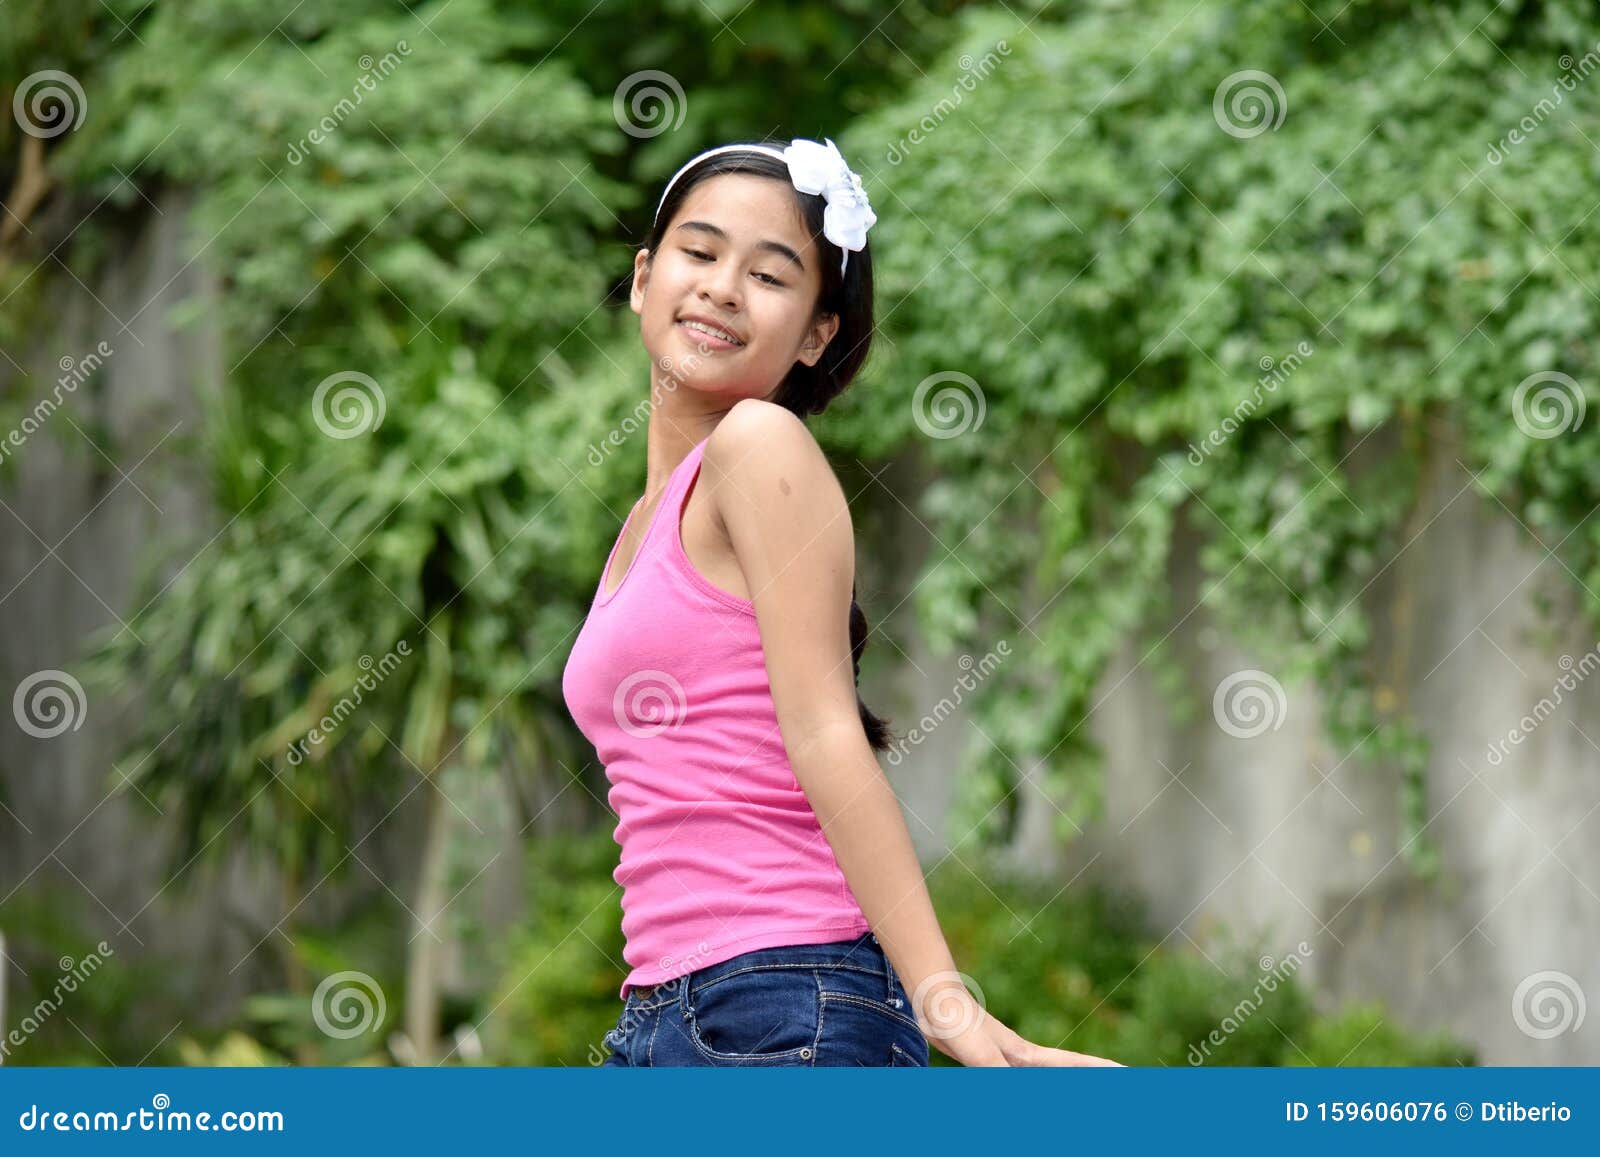 Une Belle Fille Philippine Qui Danse Photo Stock Image Du Jeunesse